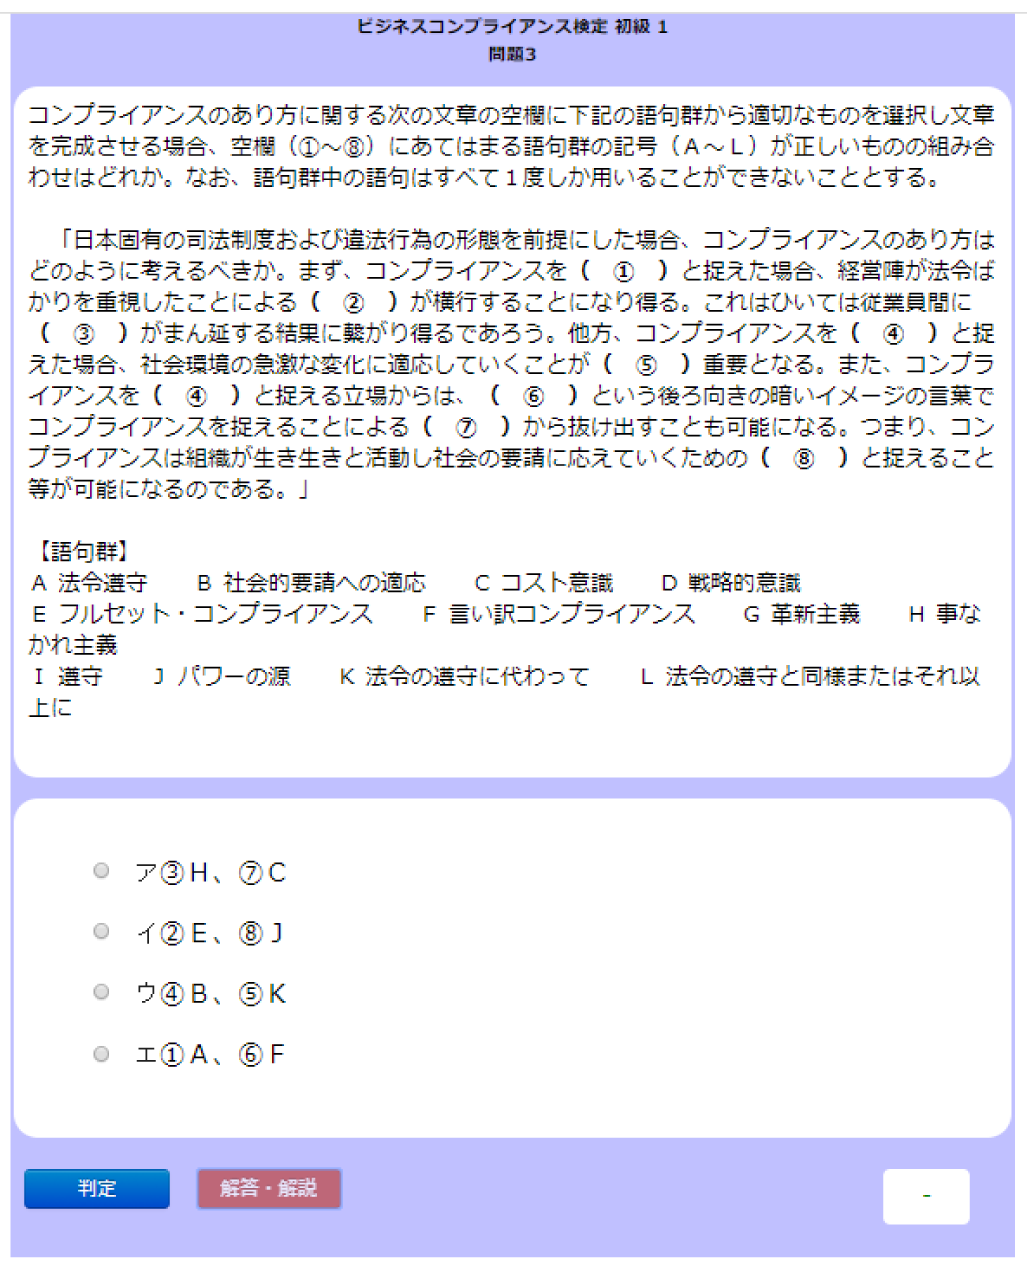 ビジネスコンプライアンス検定 コンテンツ一覧 マイステップゼミ 日本データパシフィック株式会社